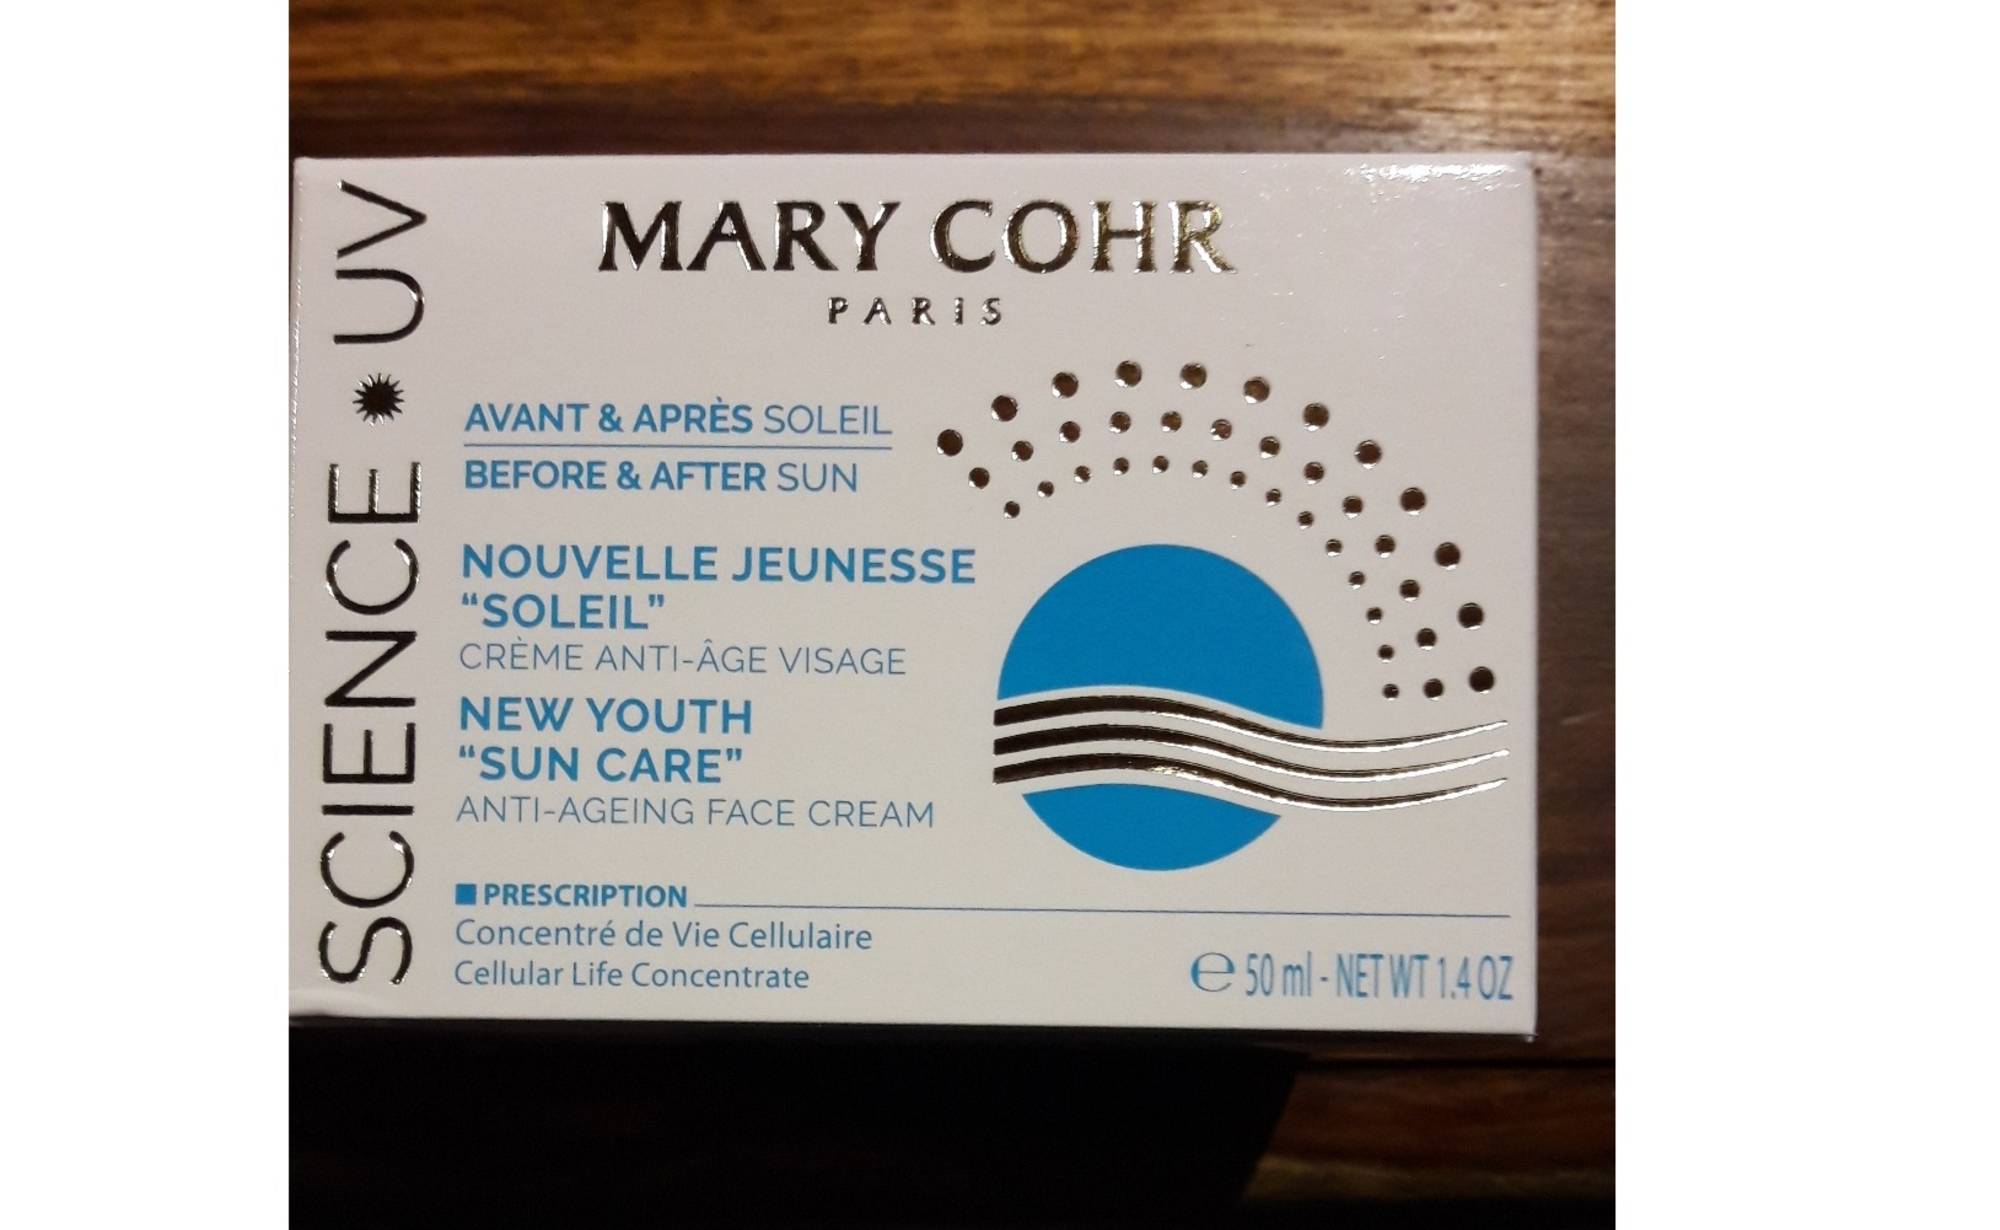 MARY COHR - Nouvelle jeunesse soleil - Crème anti-âge visage avant & après soleil